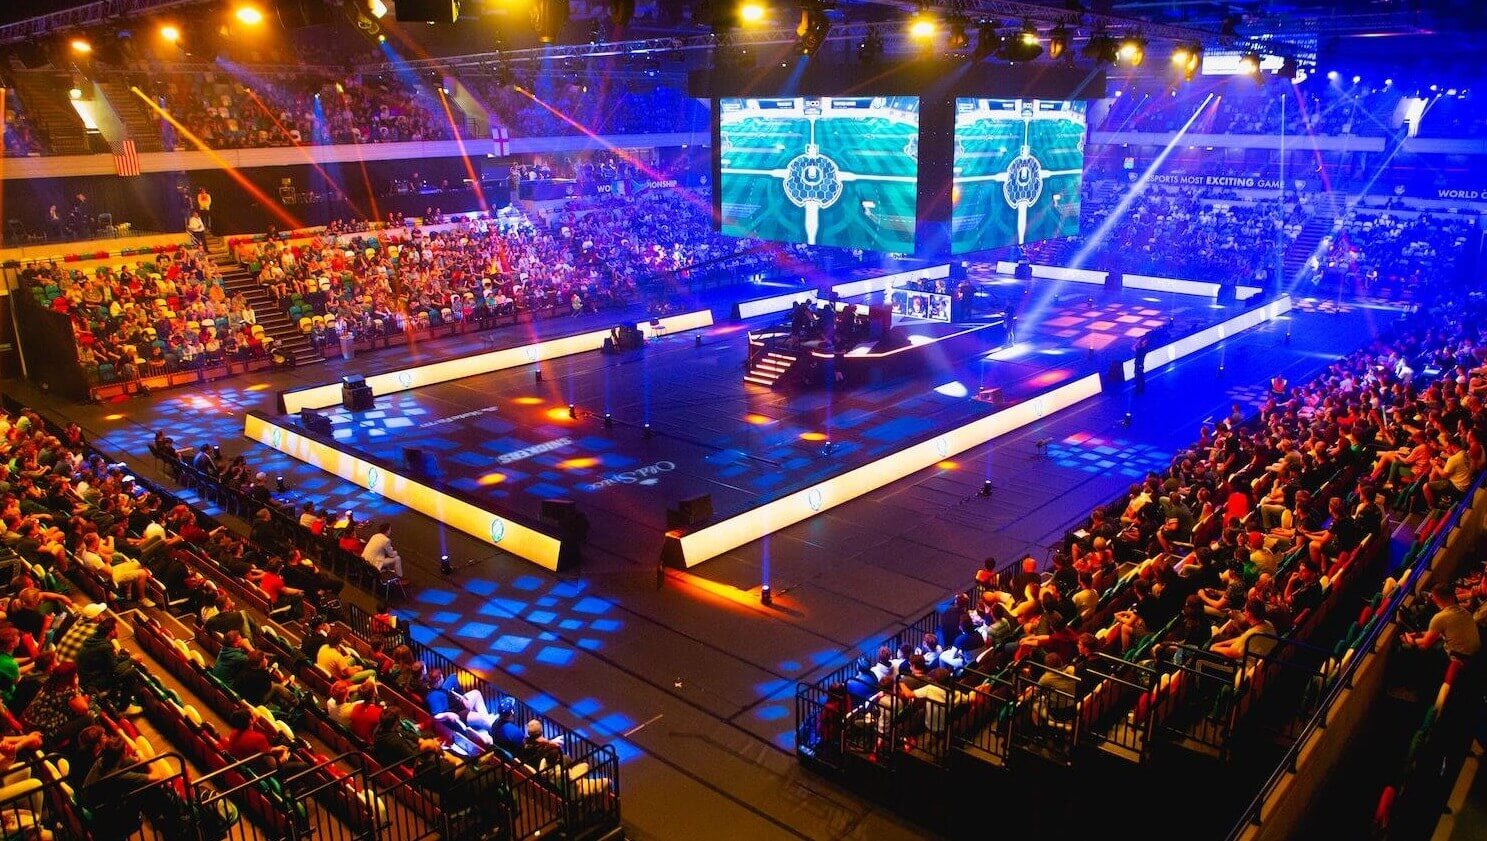 Esportstoernooi in volle gang in een grote arena, met gepassioneerde fans die kijken naar teams die concurreren op verlichte podiumschermen.